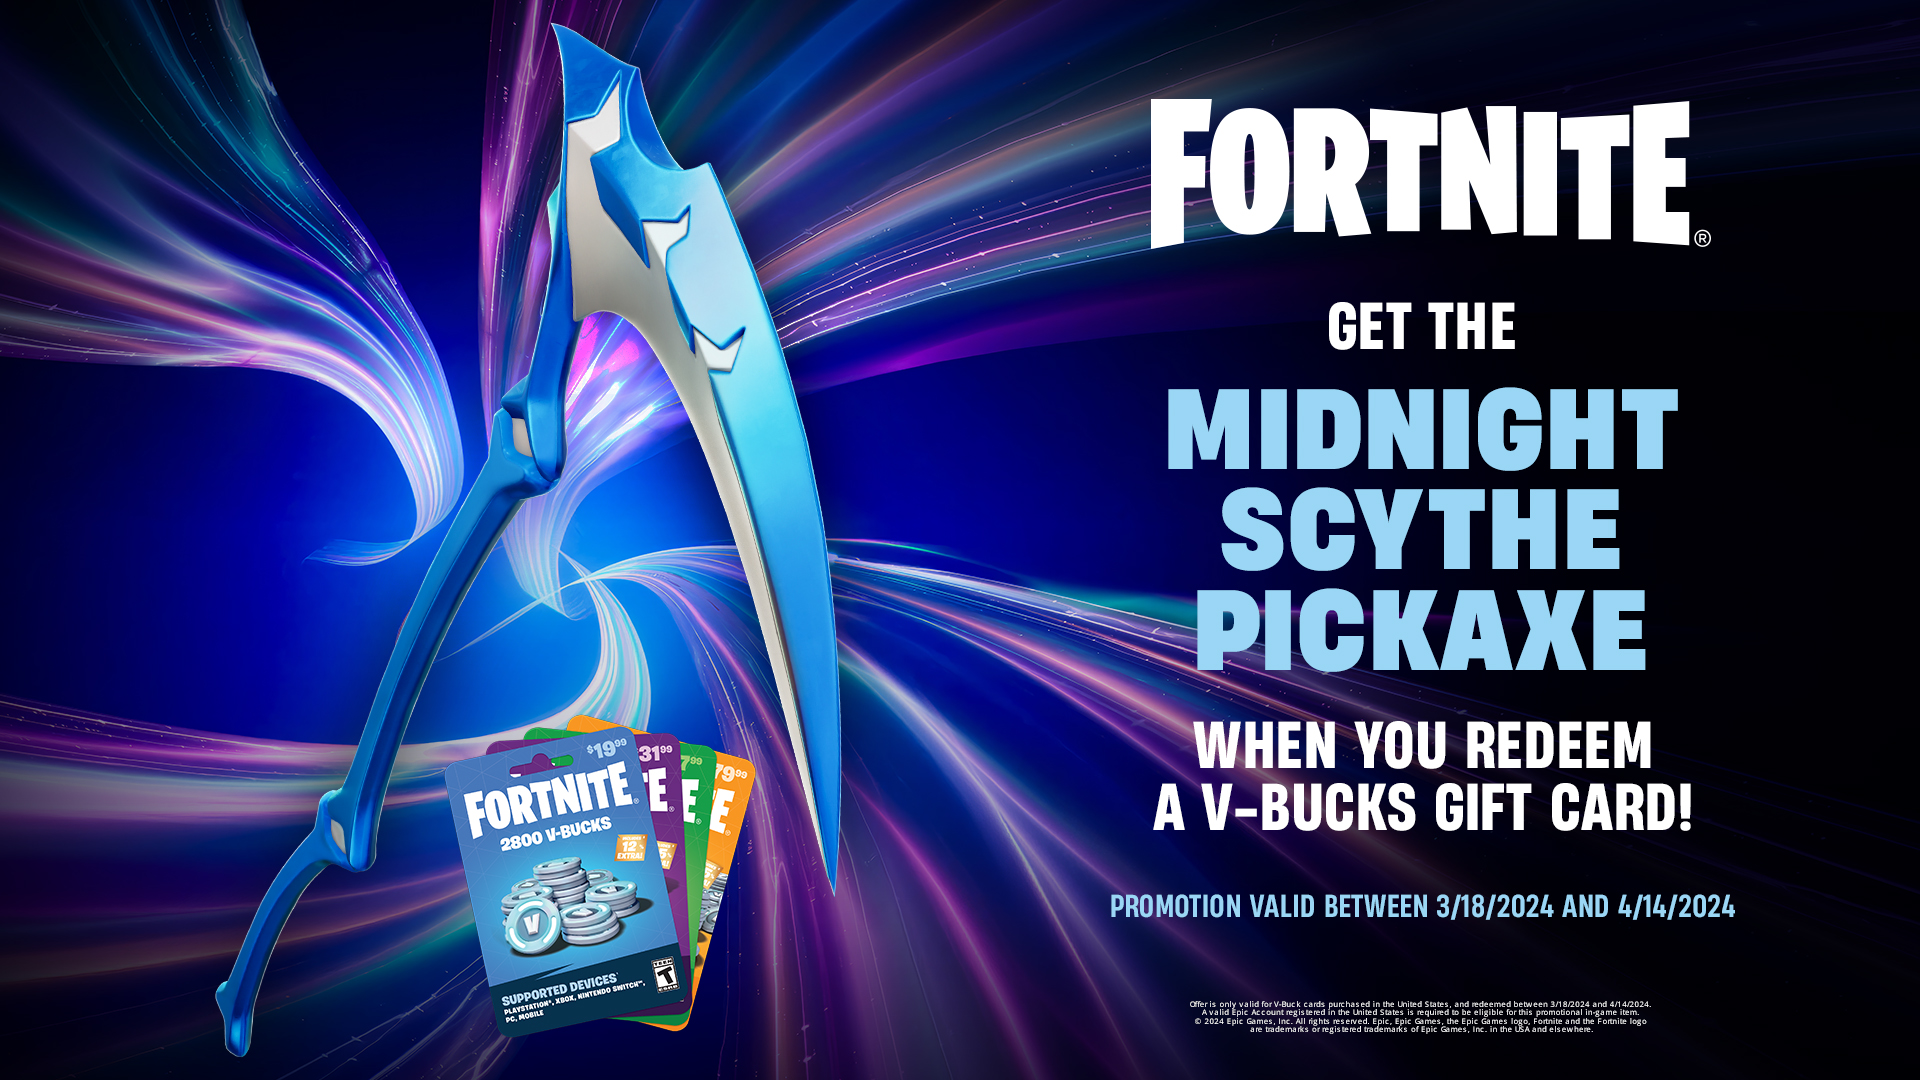 Fortnite Midnight Scythe Pickaxe bonus